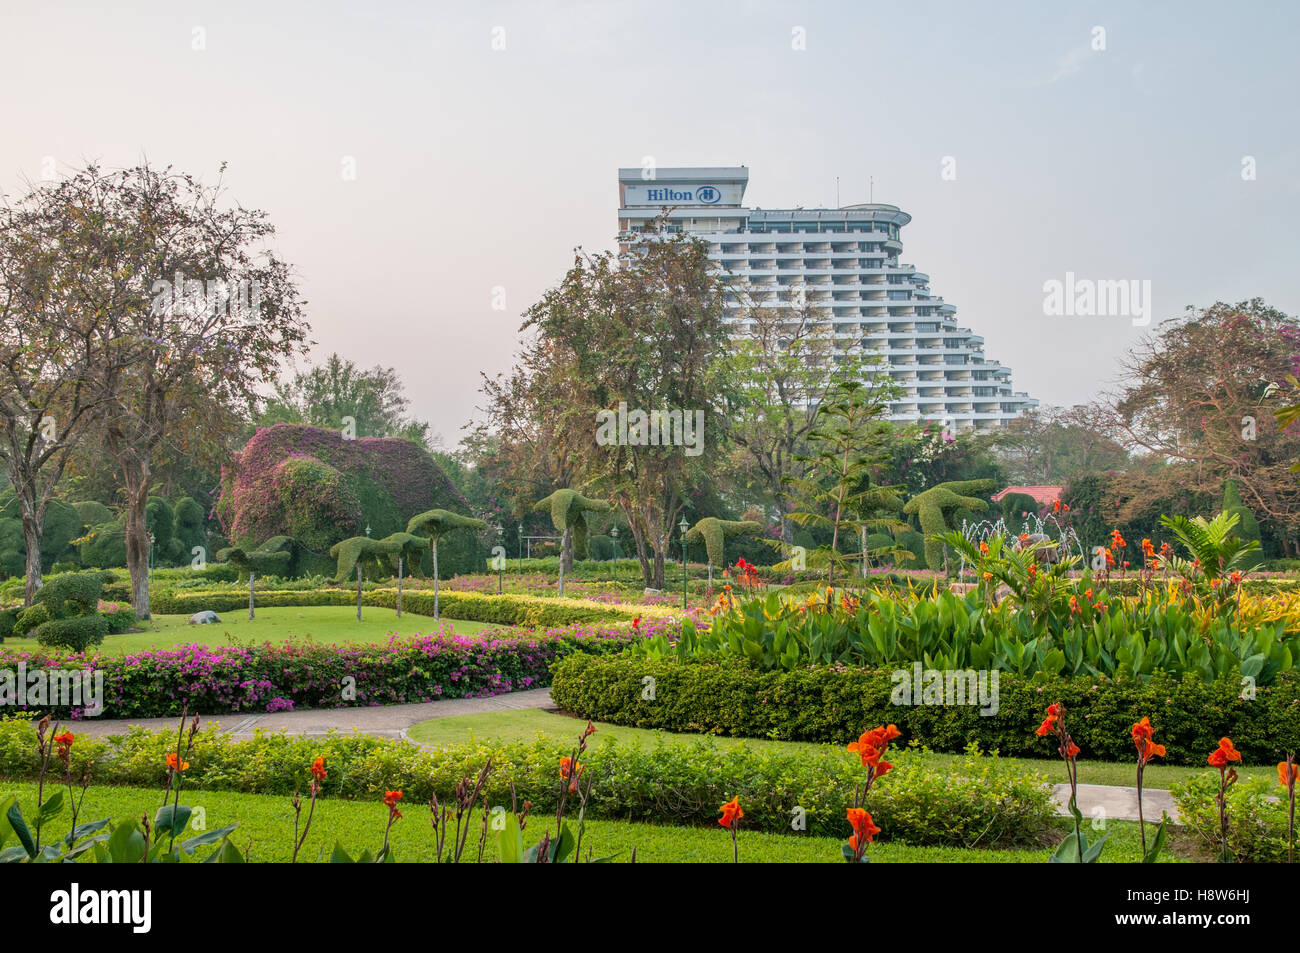 Hilton Hotel vom Topiargarten des historischen Railway Hotel in Hua hin Thailand aus gesehen, das derzeit als Centara Grand Beach Resort & Villas bekannt ist Stockfoto